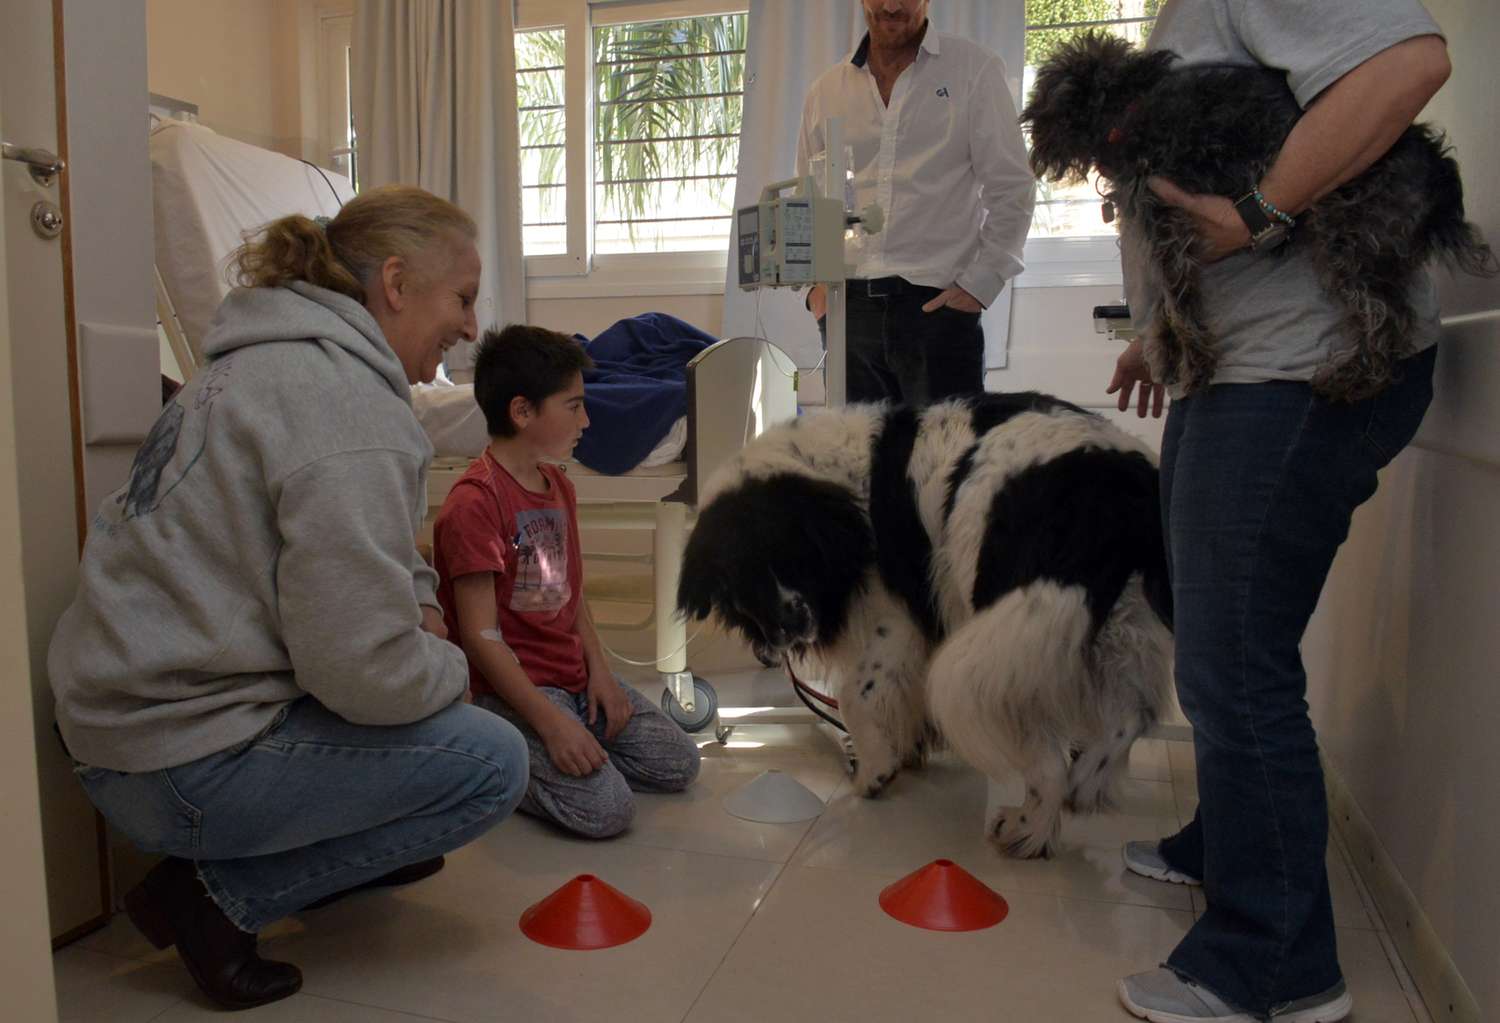 Terapia asistida con perros, una experiencia que multiplica beneficios en el Hospital de Niños